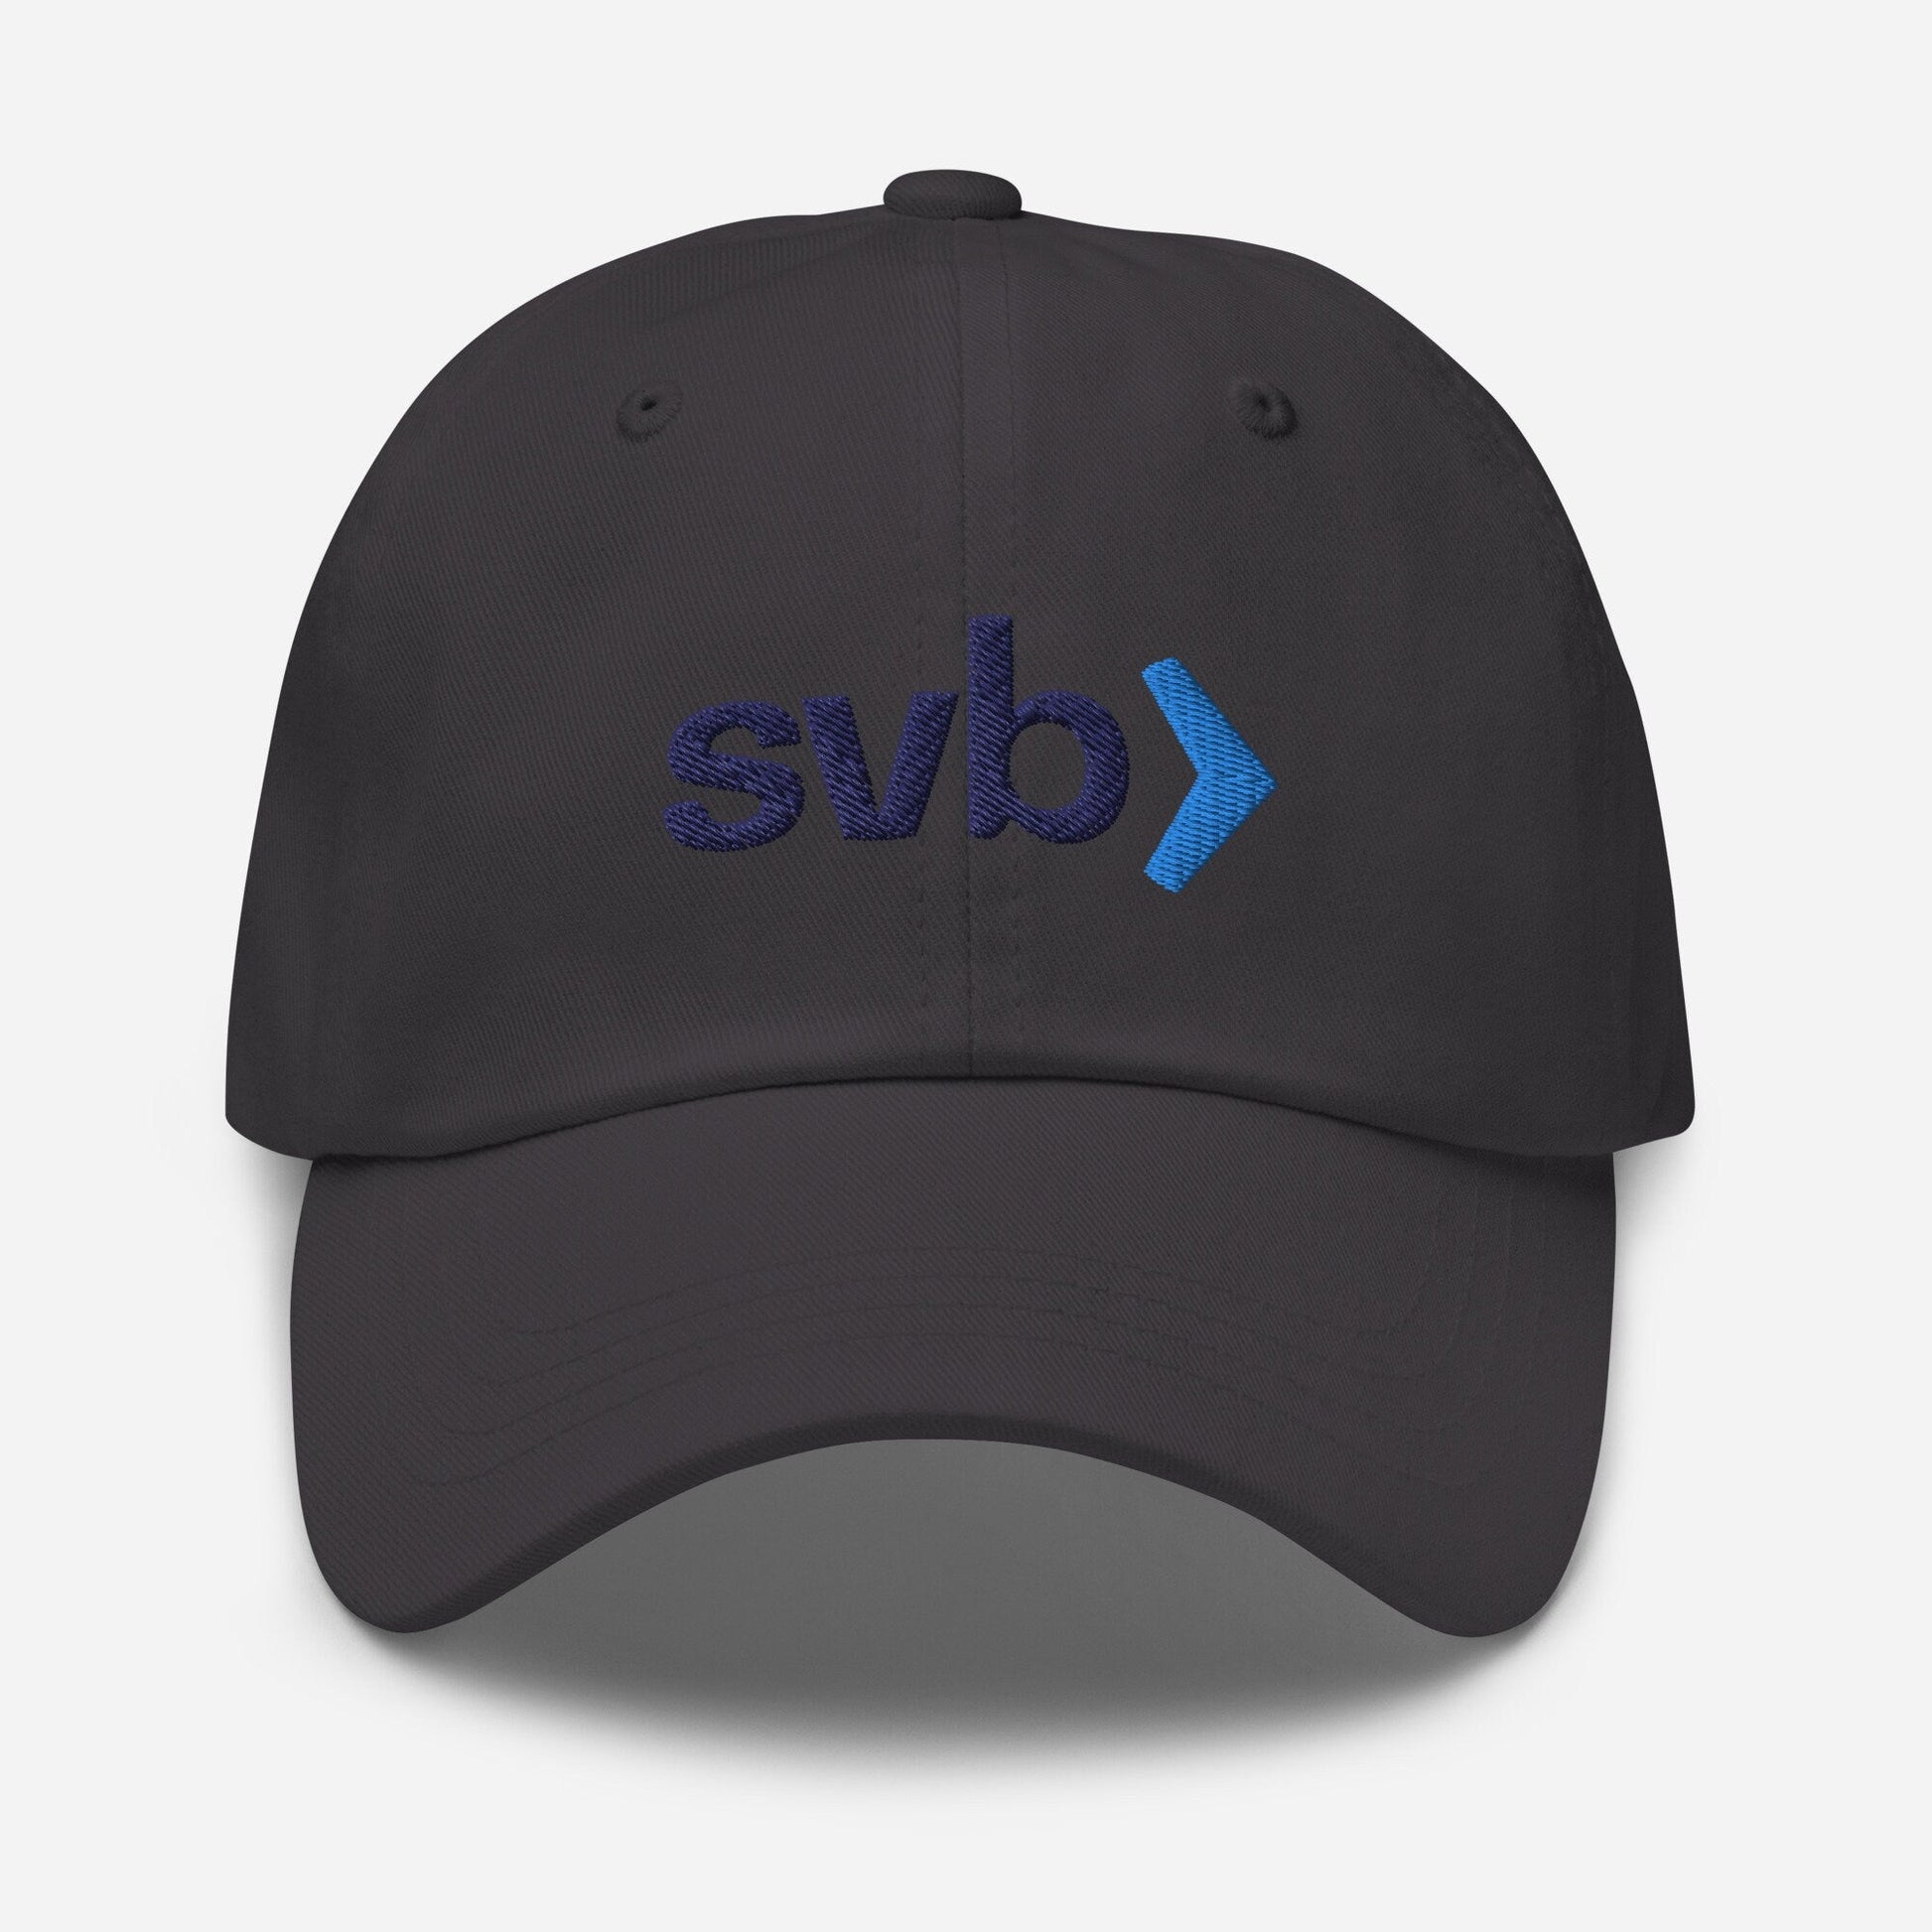 Silicon Valley Bank - Dad Hat - SVB Risk Management - Minimalist Embroidered Cotton Hat - Evilwater Originals